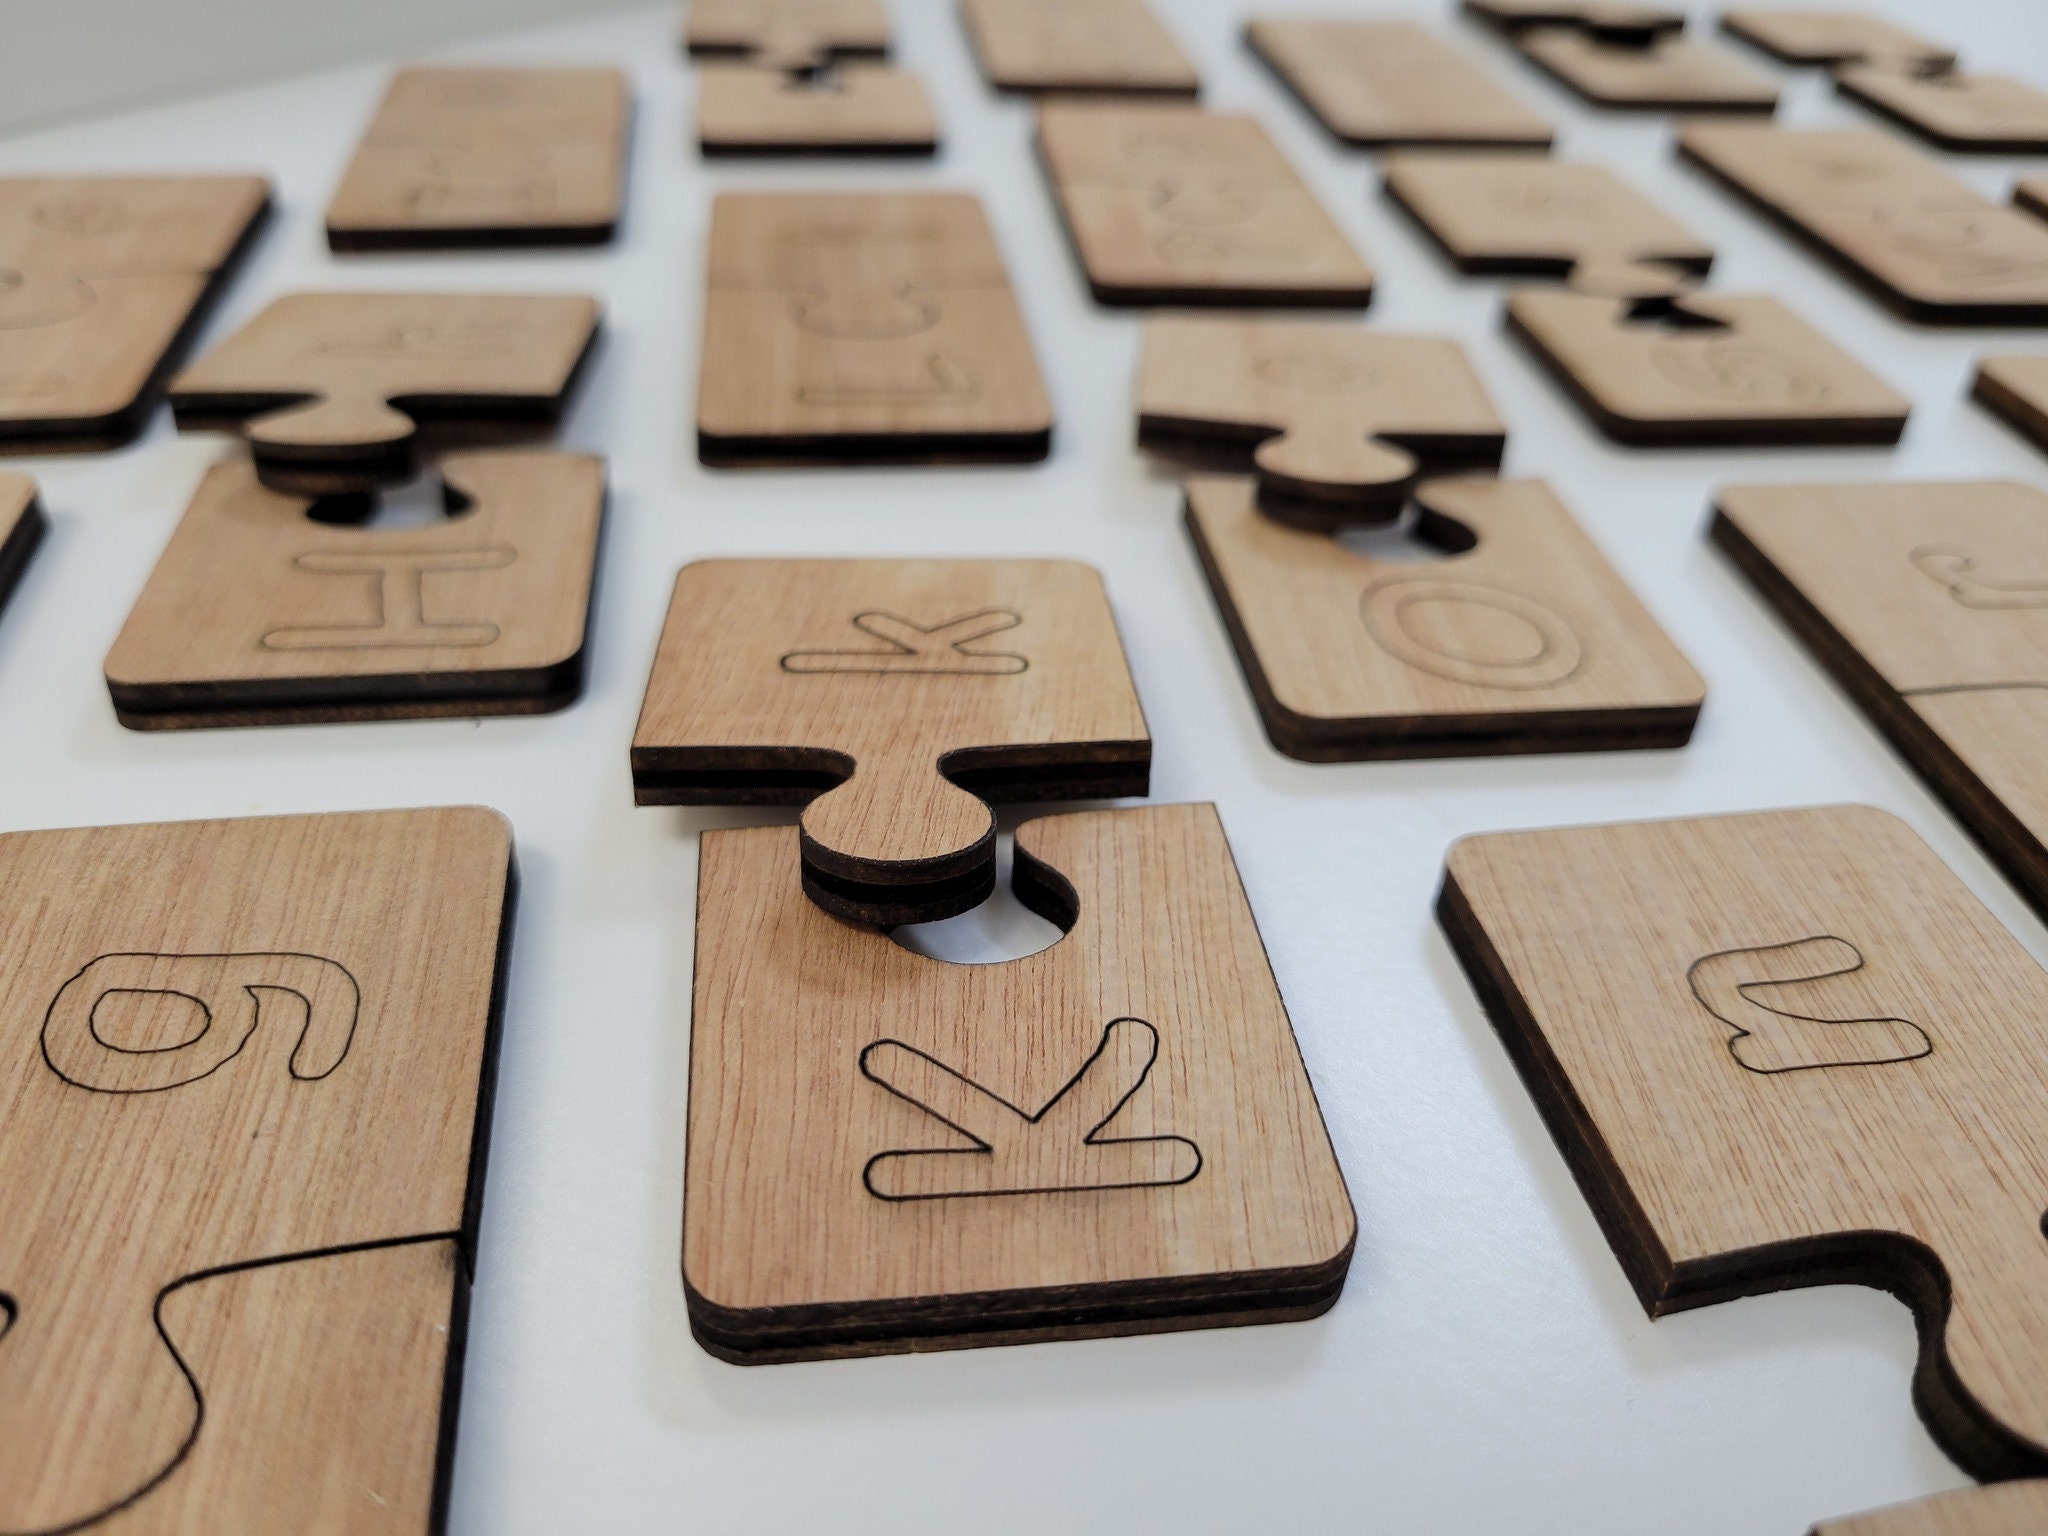 Wooden letters puzzle :: lutini.eu::Shop-warehouse,wholesale